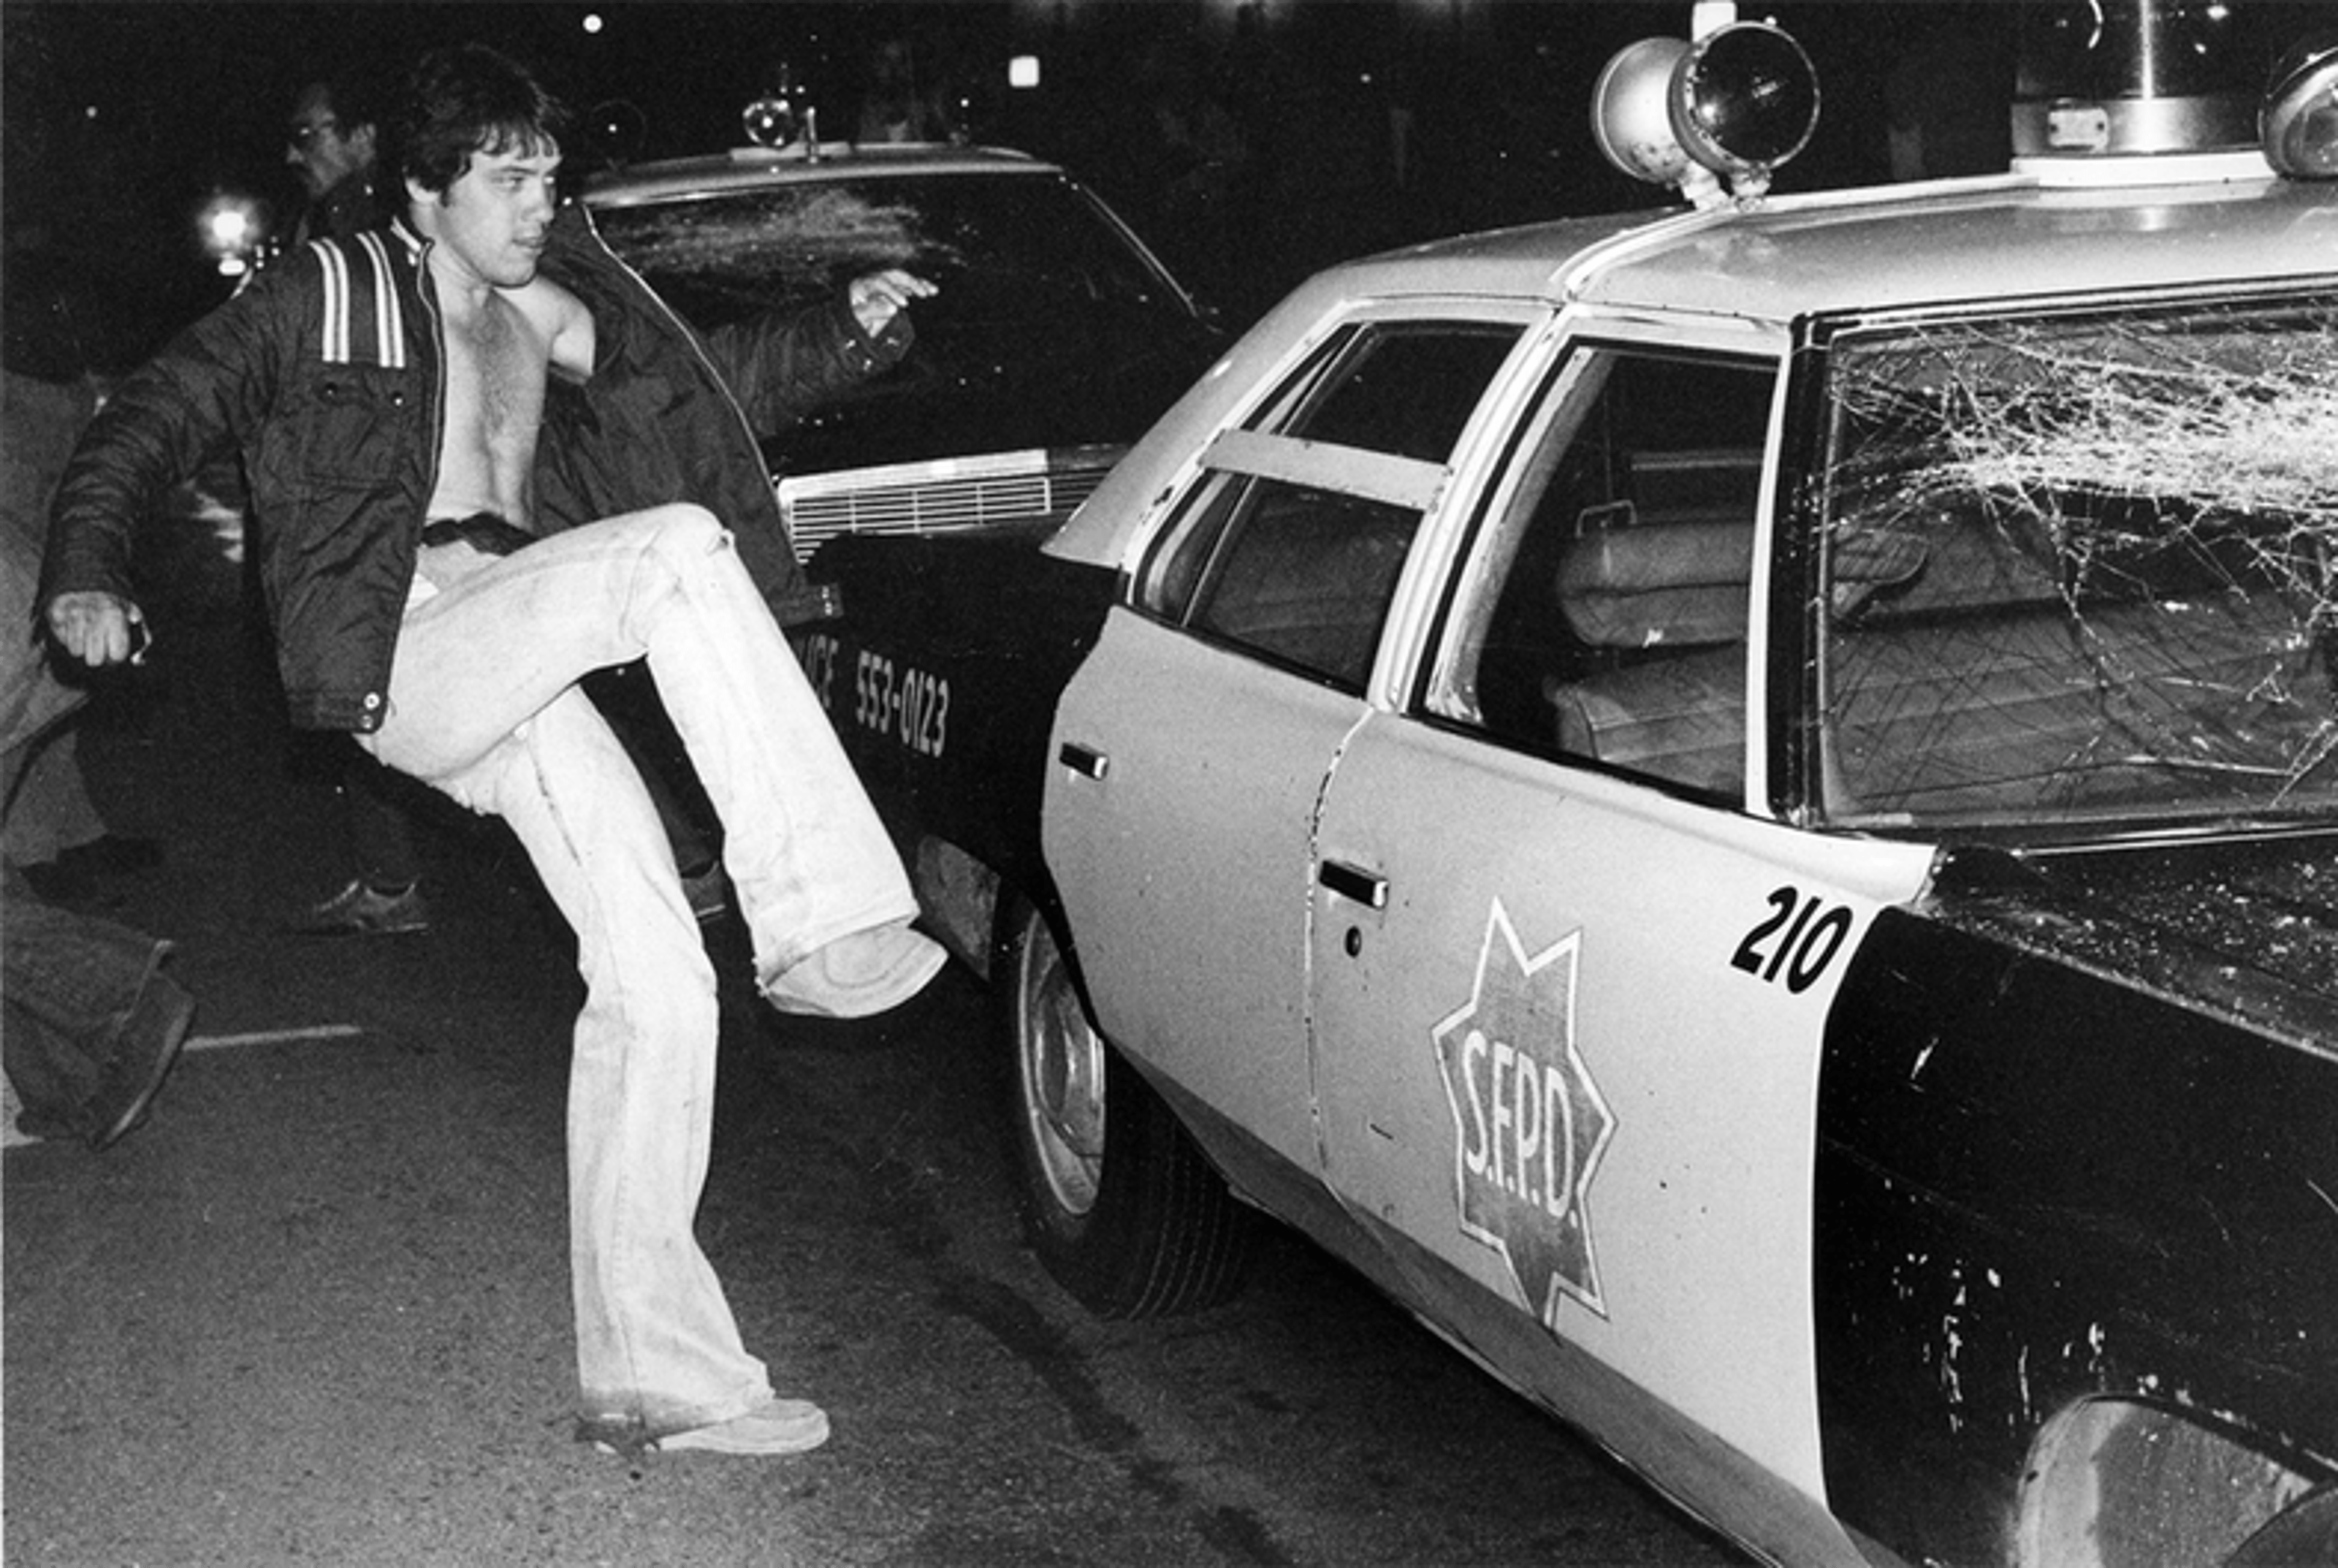 Protestor kicking police car, 1979